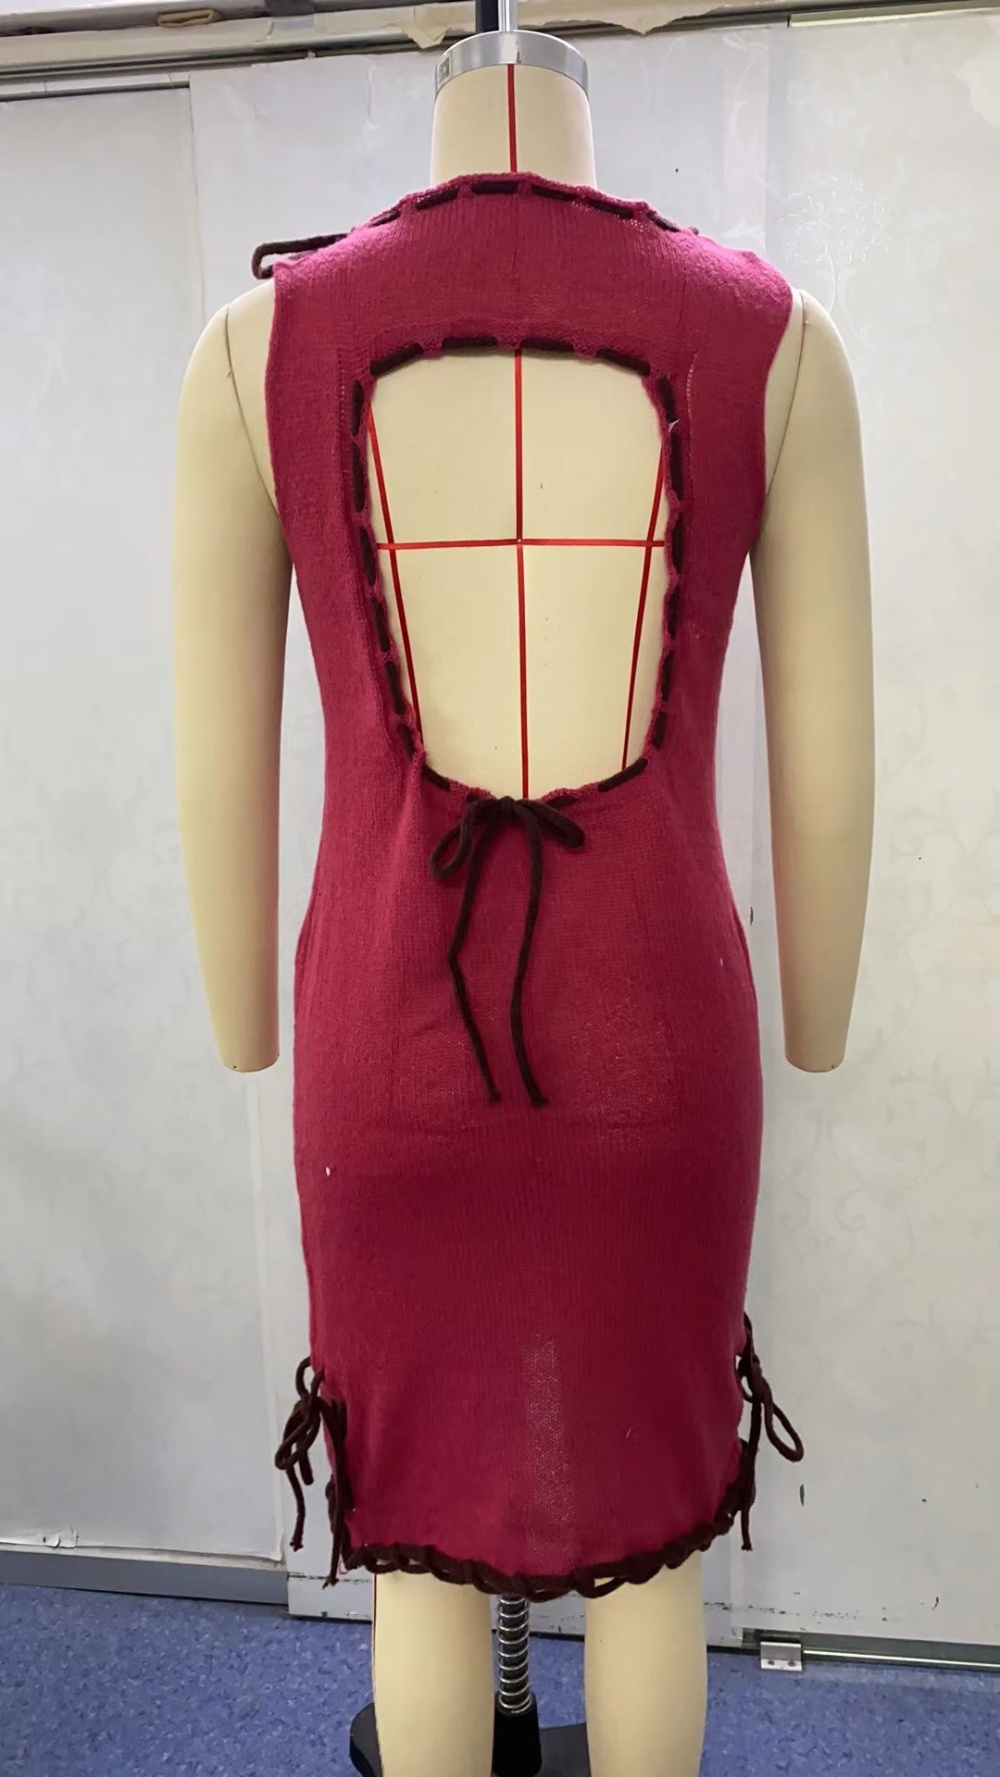 Knitted frenum European style dress sleeveless summer vest